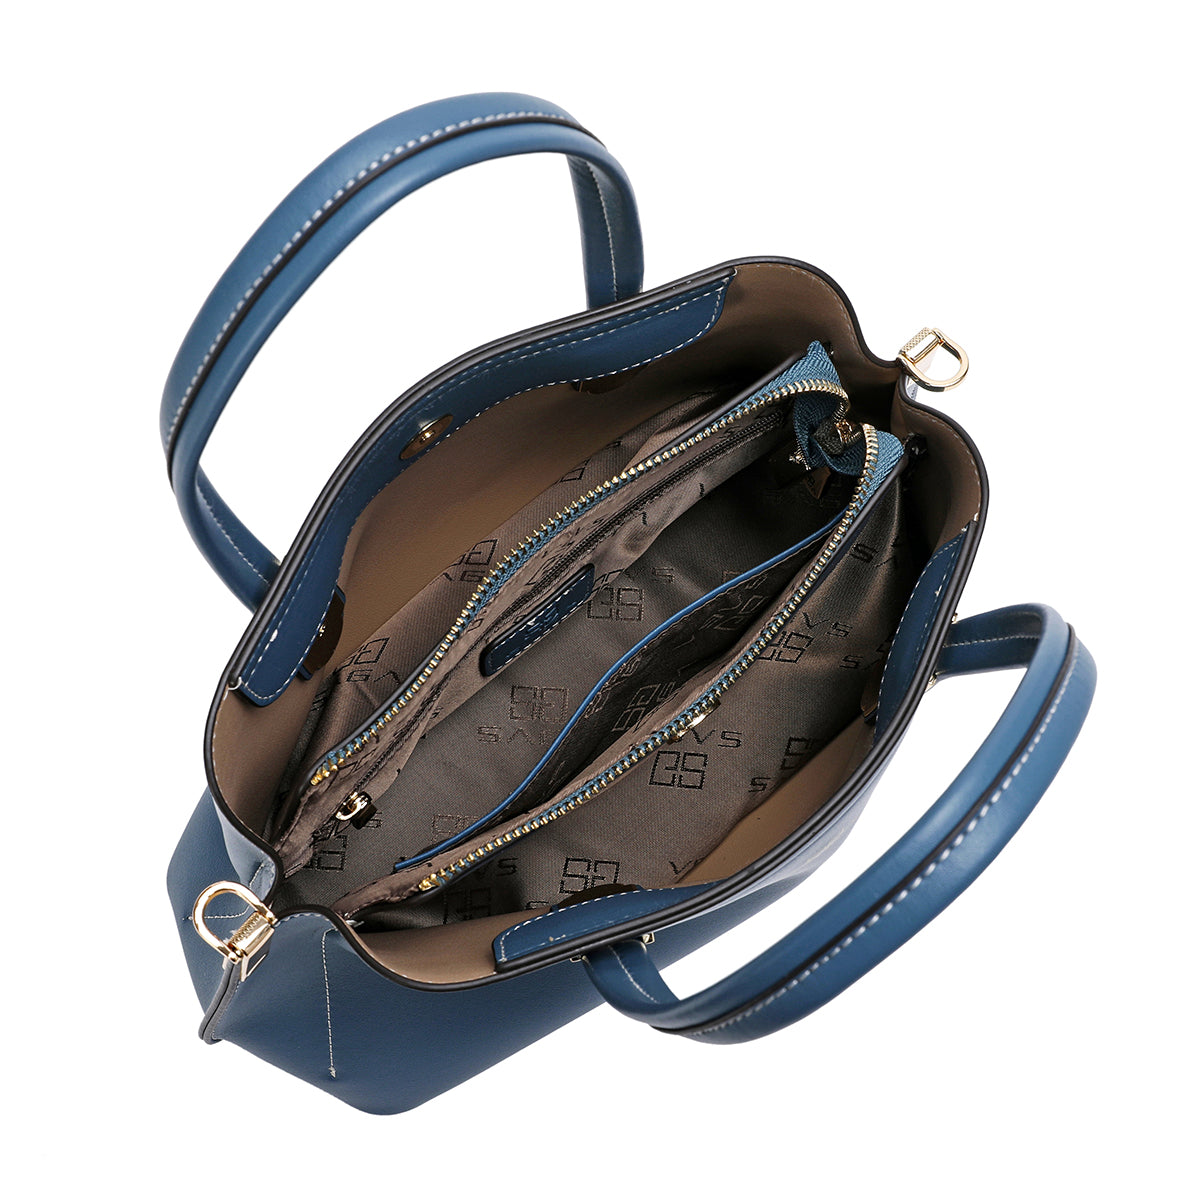 Handbag with shoulder strap, width 27 cm, maroon or blue